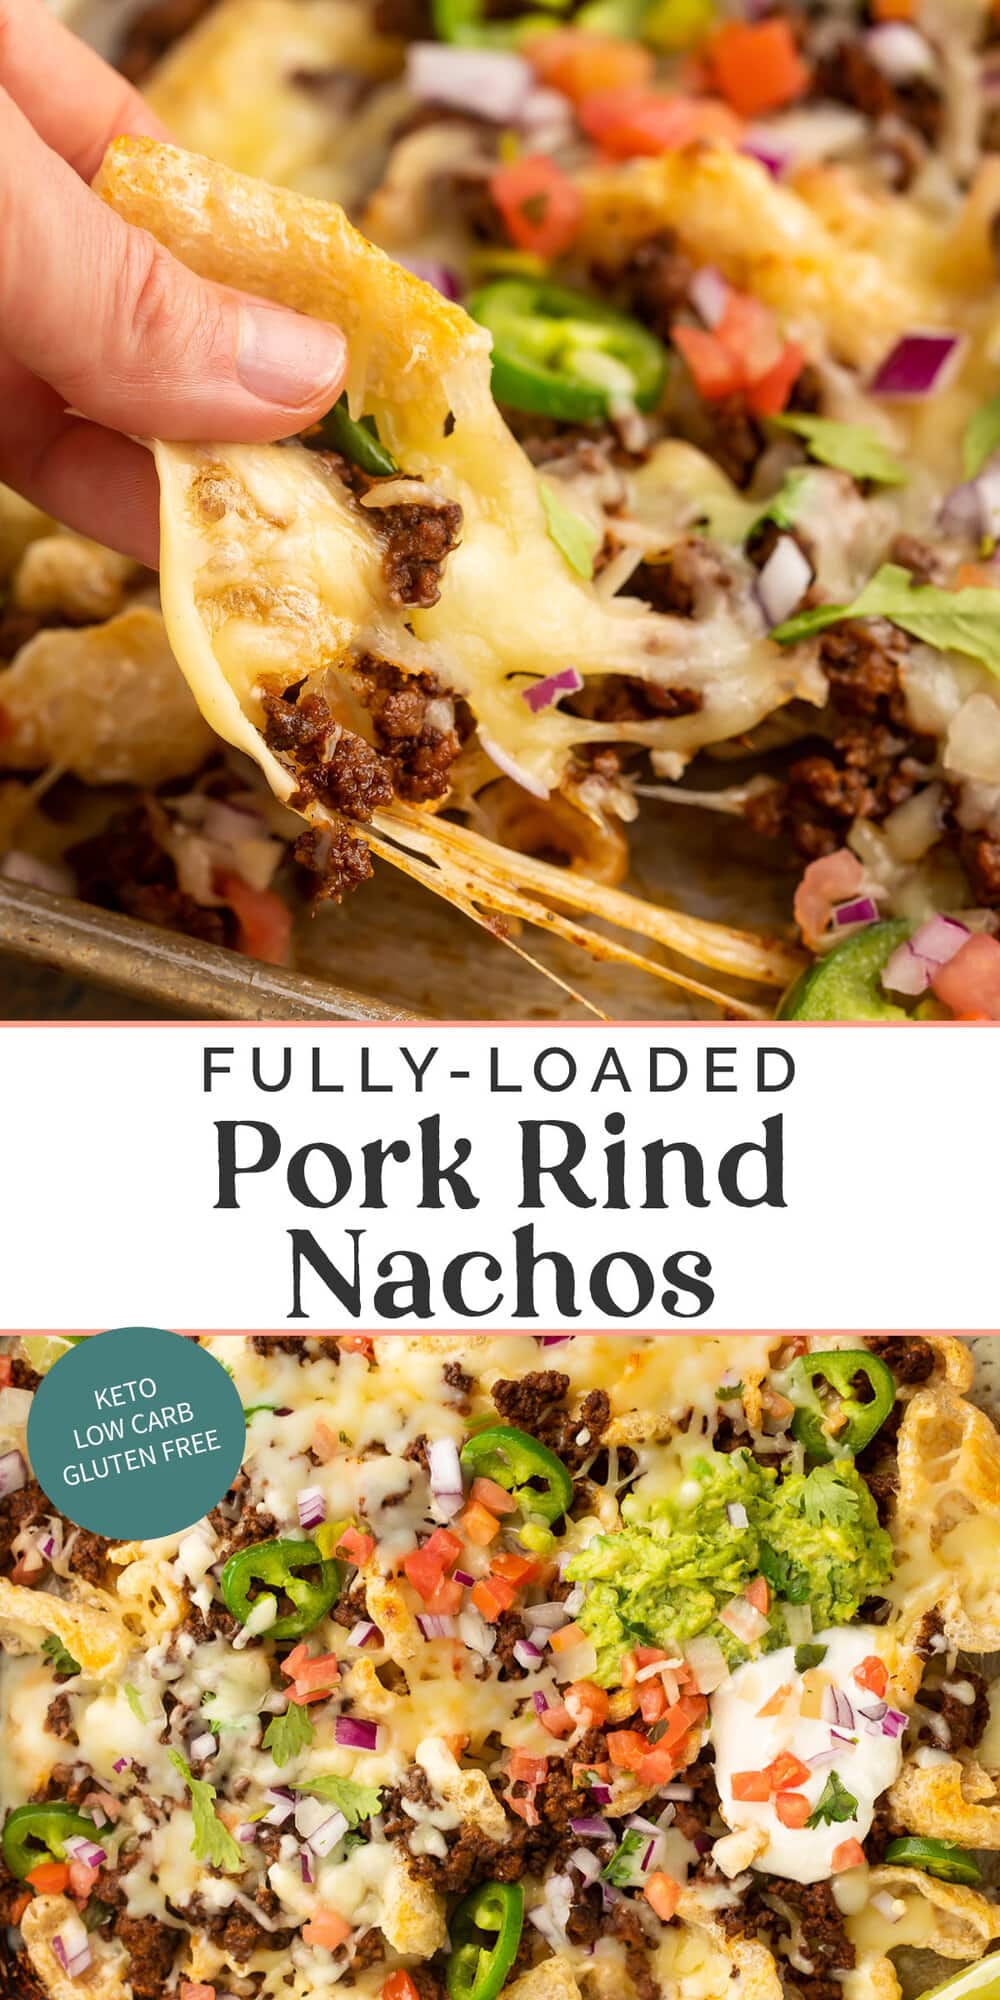 Pin graphic for pork rind nachos.